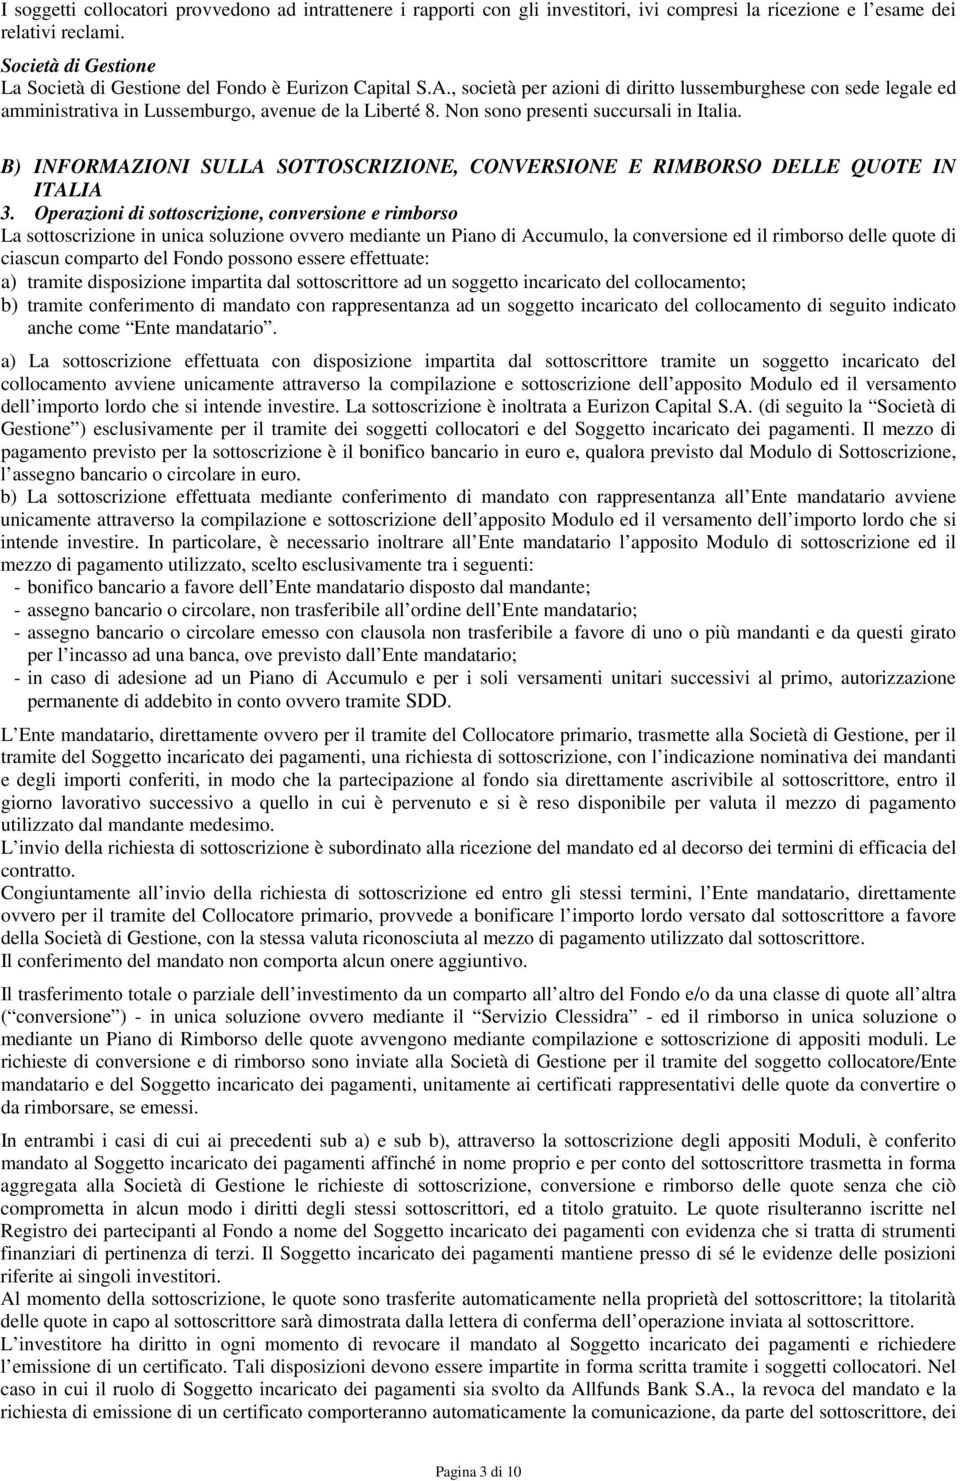 Non sono presenti succursali in Italia. B) INFORMAZIONI SULLA SOTTOSCRIZIONE, CONVERSIONE E RIMBORSO DELLE QUOTE IN ITALIA 3.